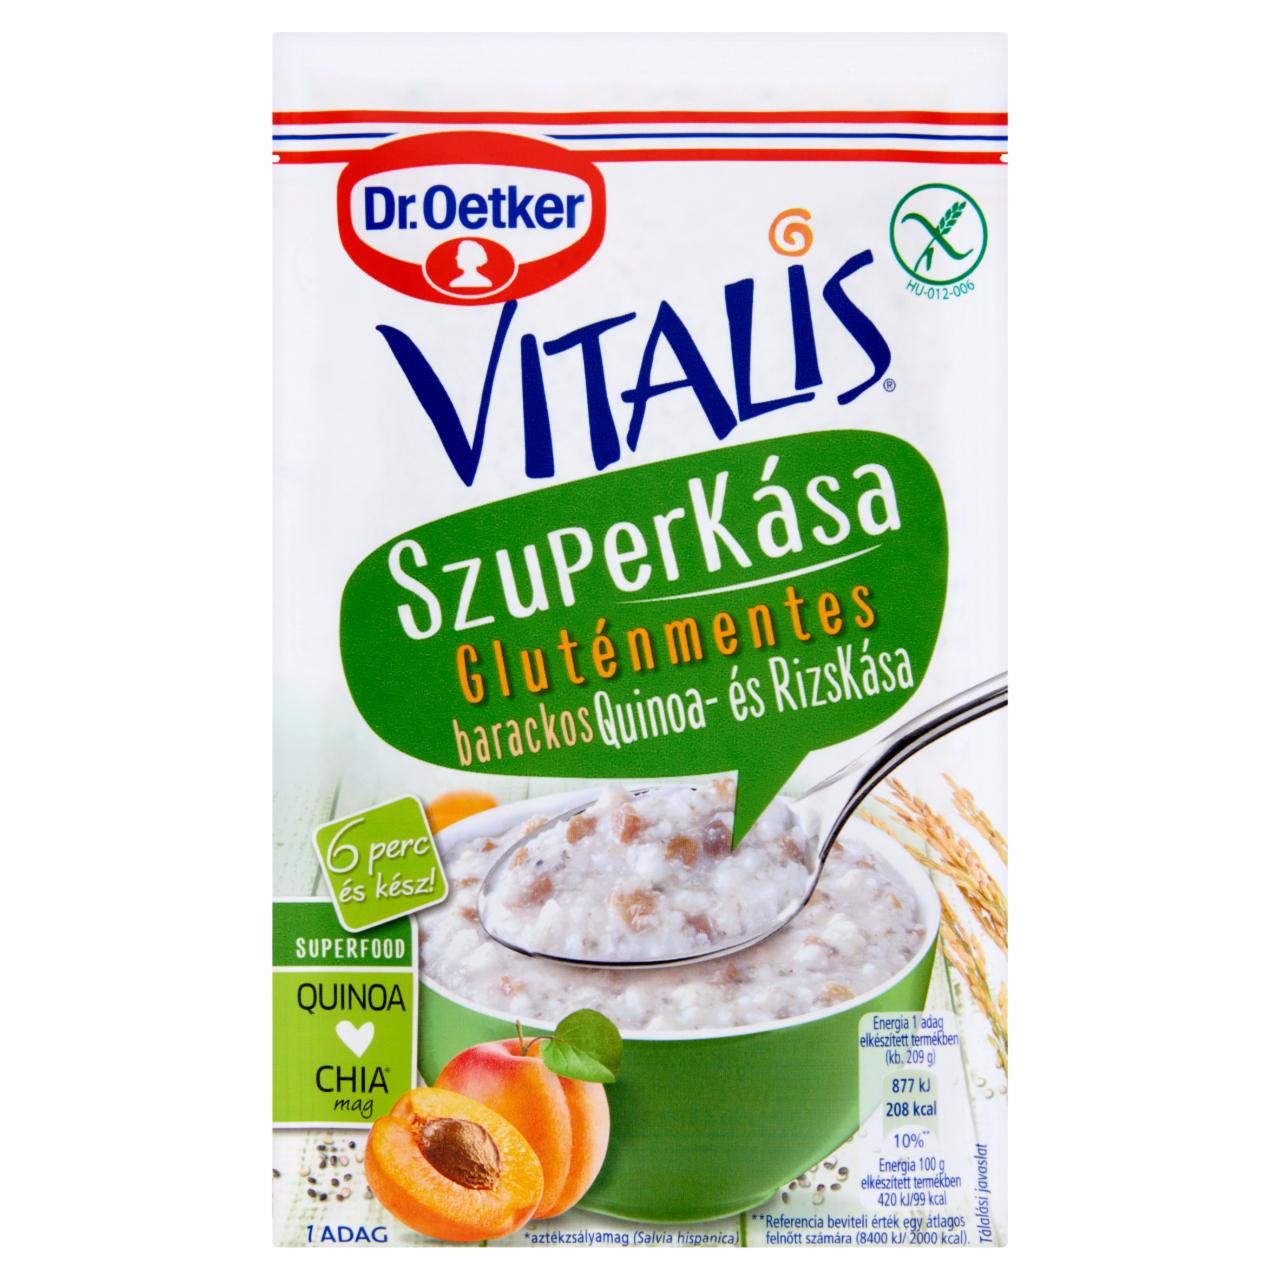 Képek - Dr. Oetker Vitalis Szuperkása gluténmentes barackos quinoa- és rizskása alappor 59 g